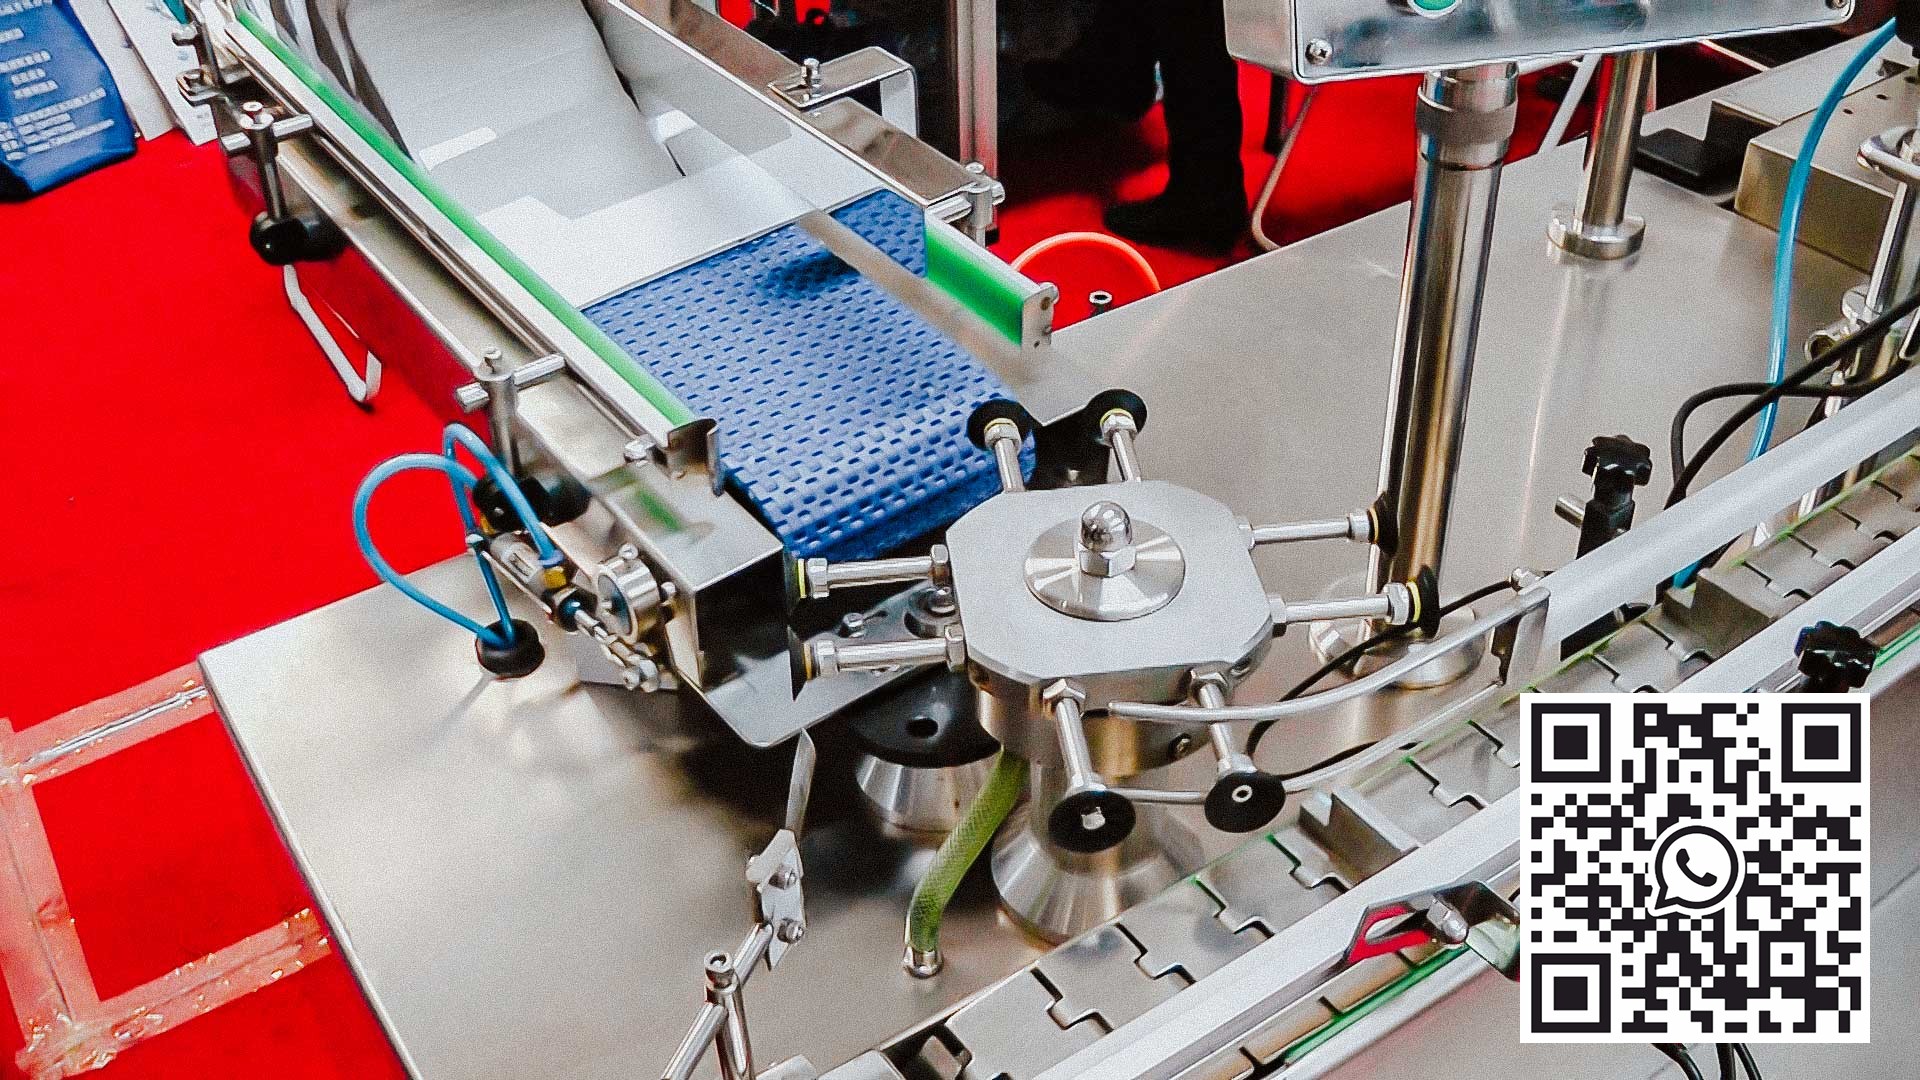 Automatický balicí stroj na lepenky pro lahvičky s peniciliny s léky